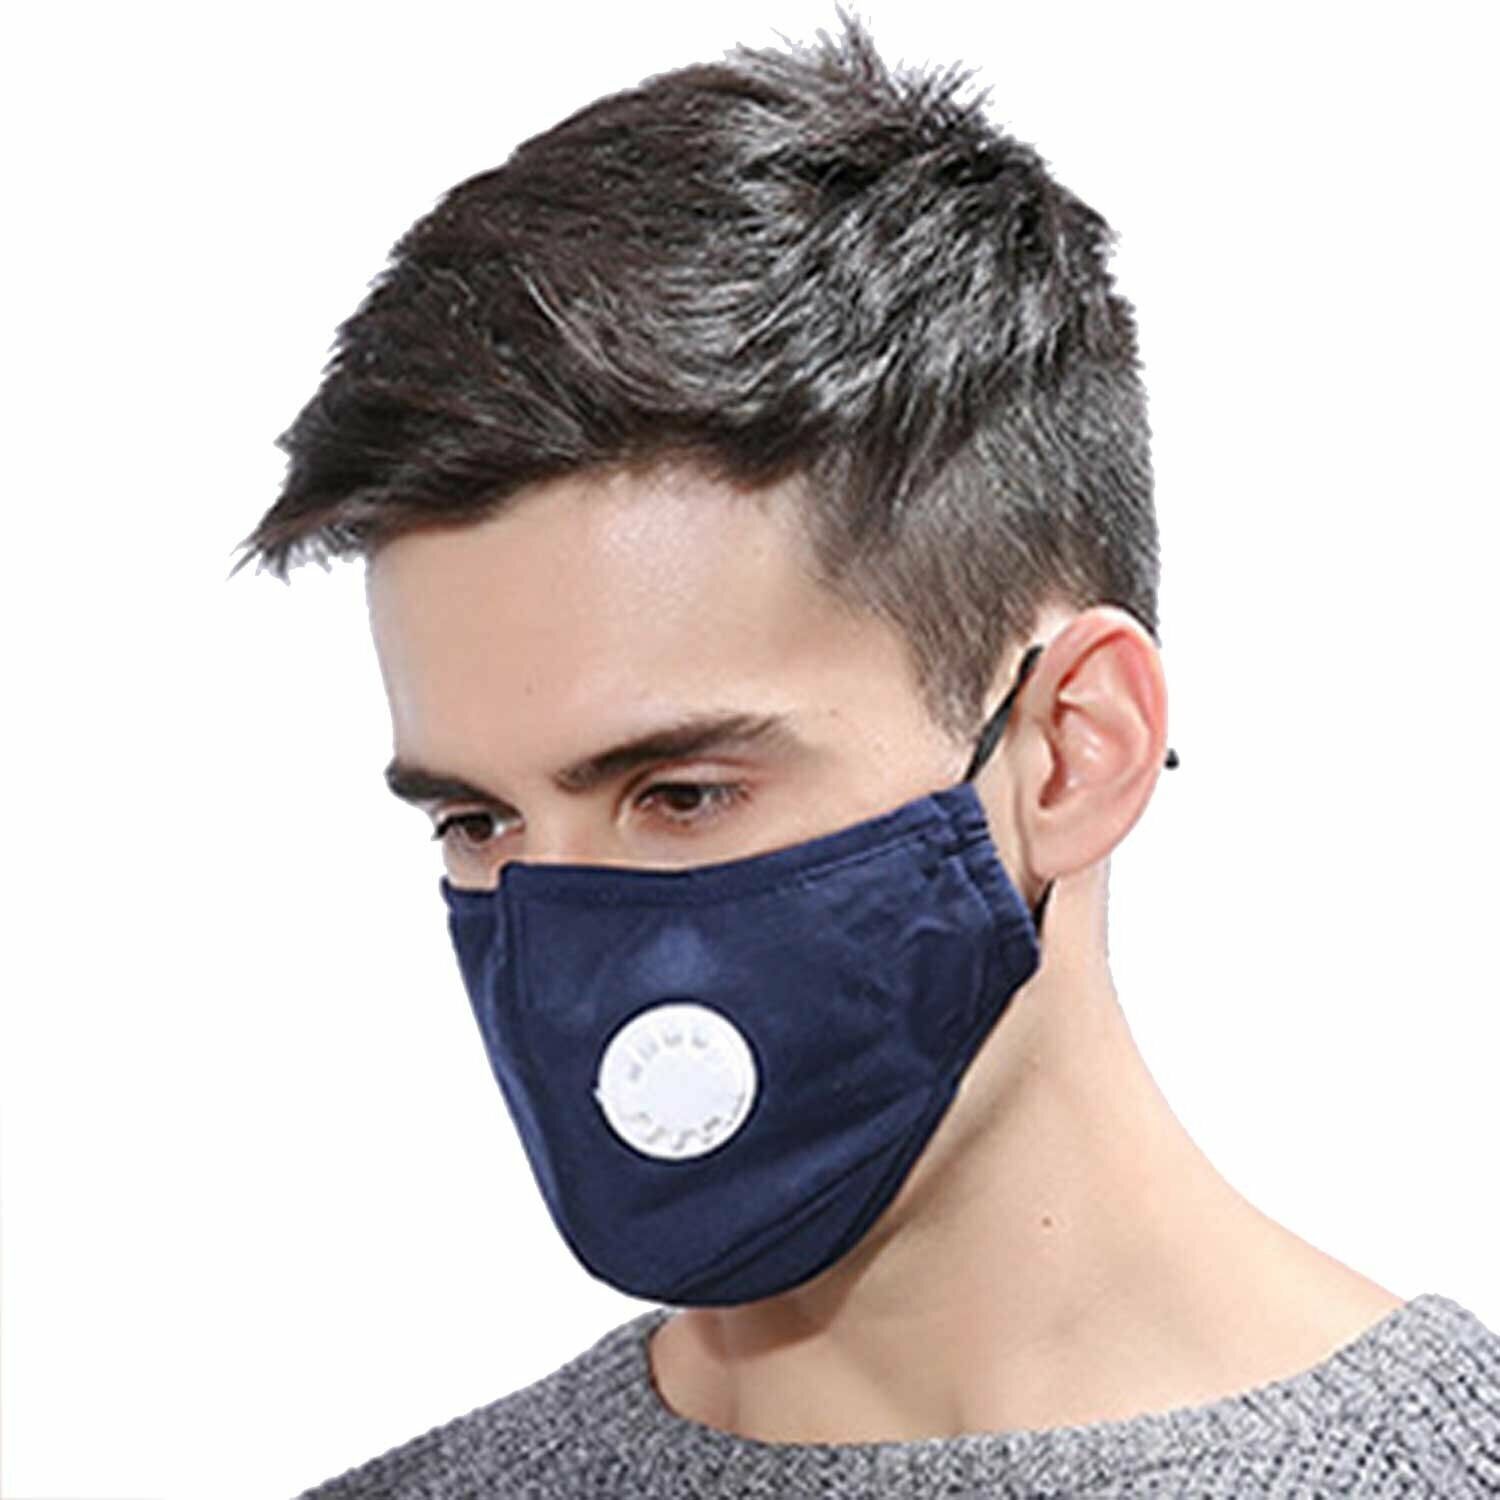 Modern respirator mask as hairdresser's equipment for dogs